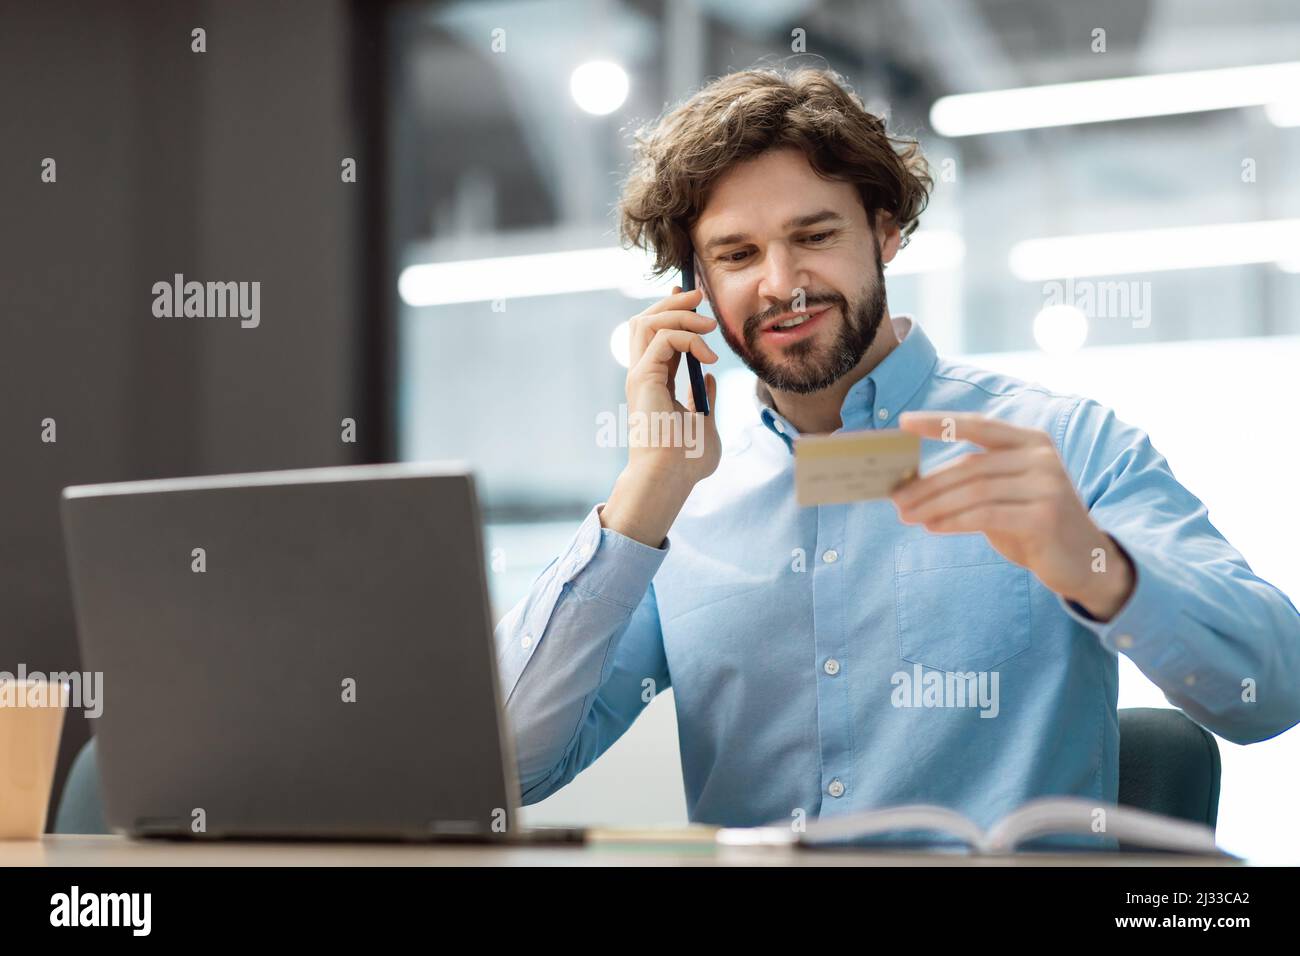 Lächelnder Mann mit Kreditkarte, der auf dem Smartphone spricht Stockfoto